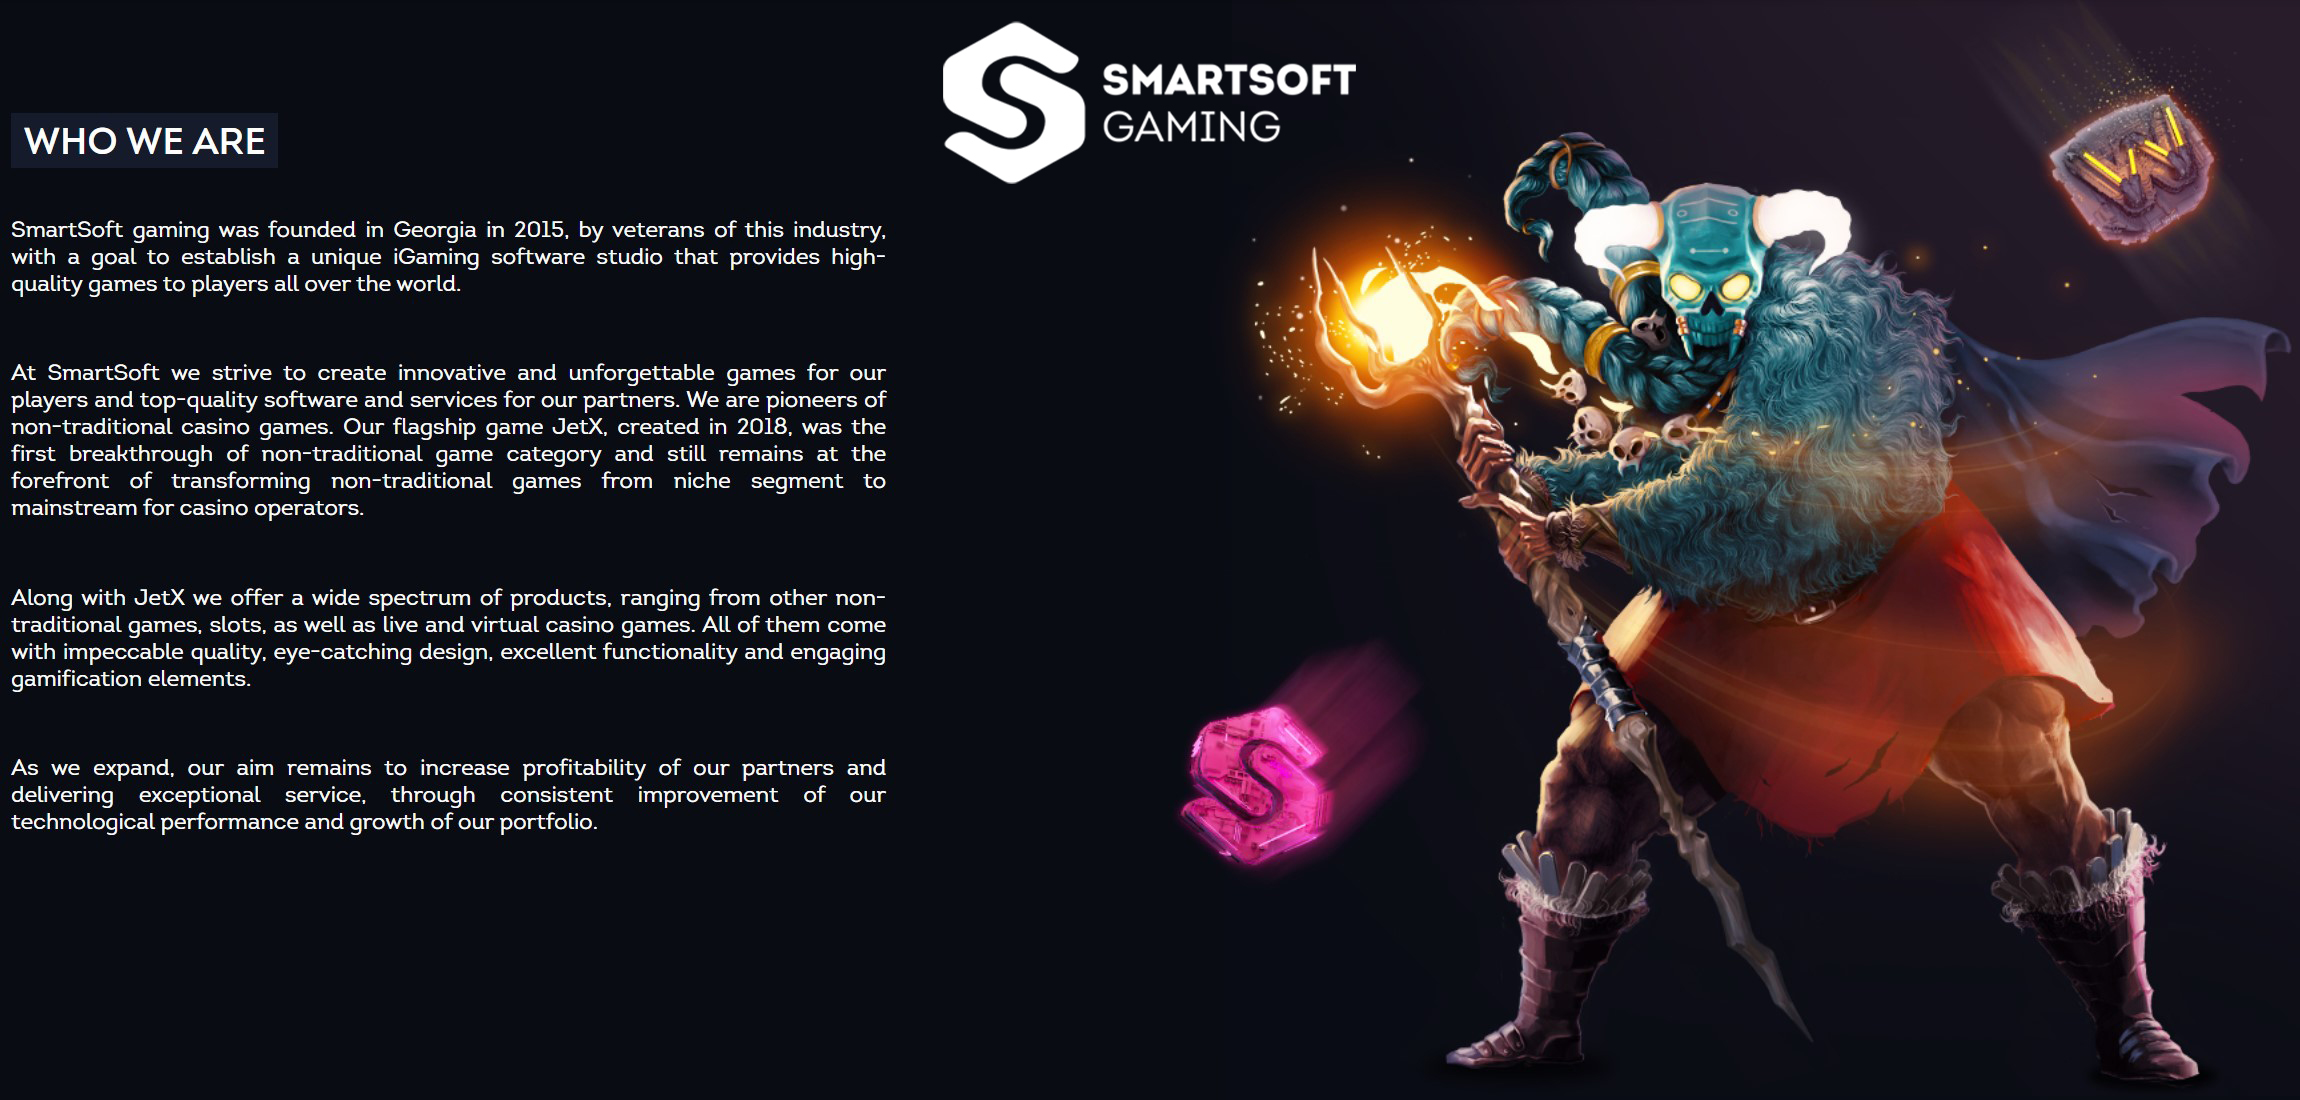 SmartSoft Gaming company